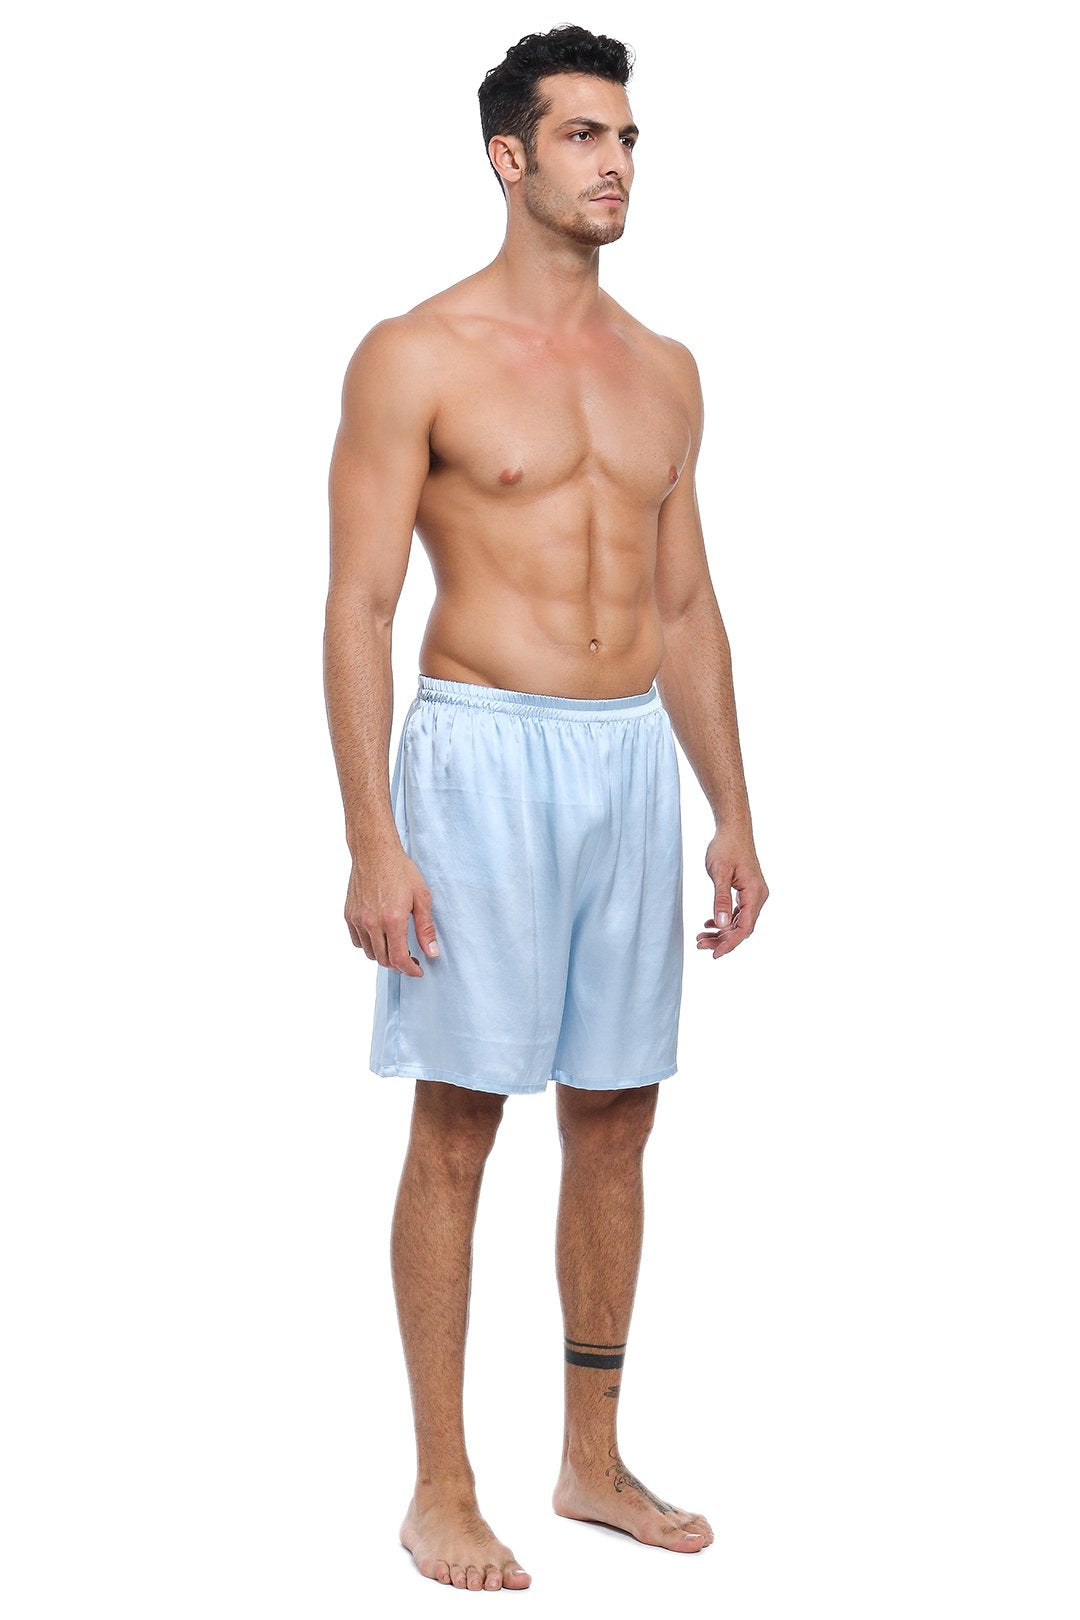 100% Mulberry Silk Boxer Shorts for Men - Light Blue – Lepton Silk